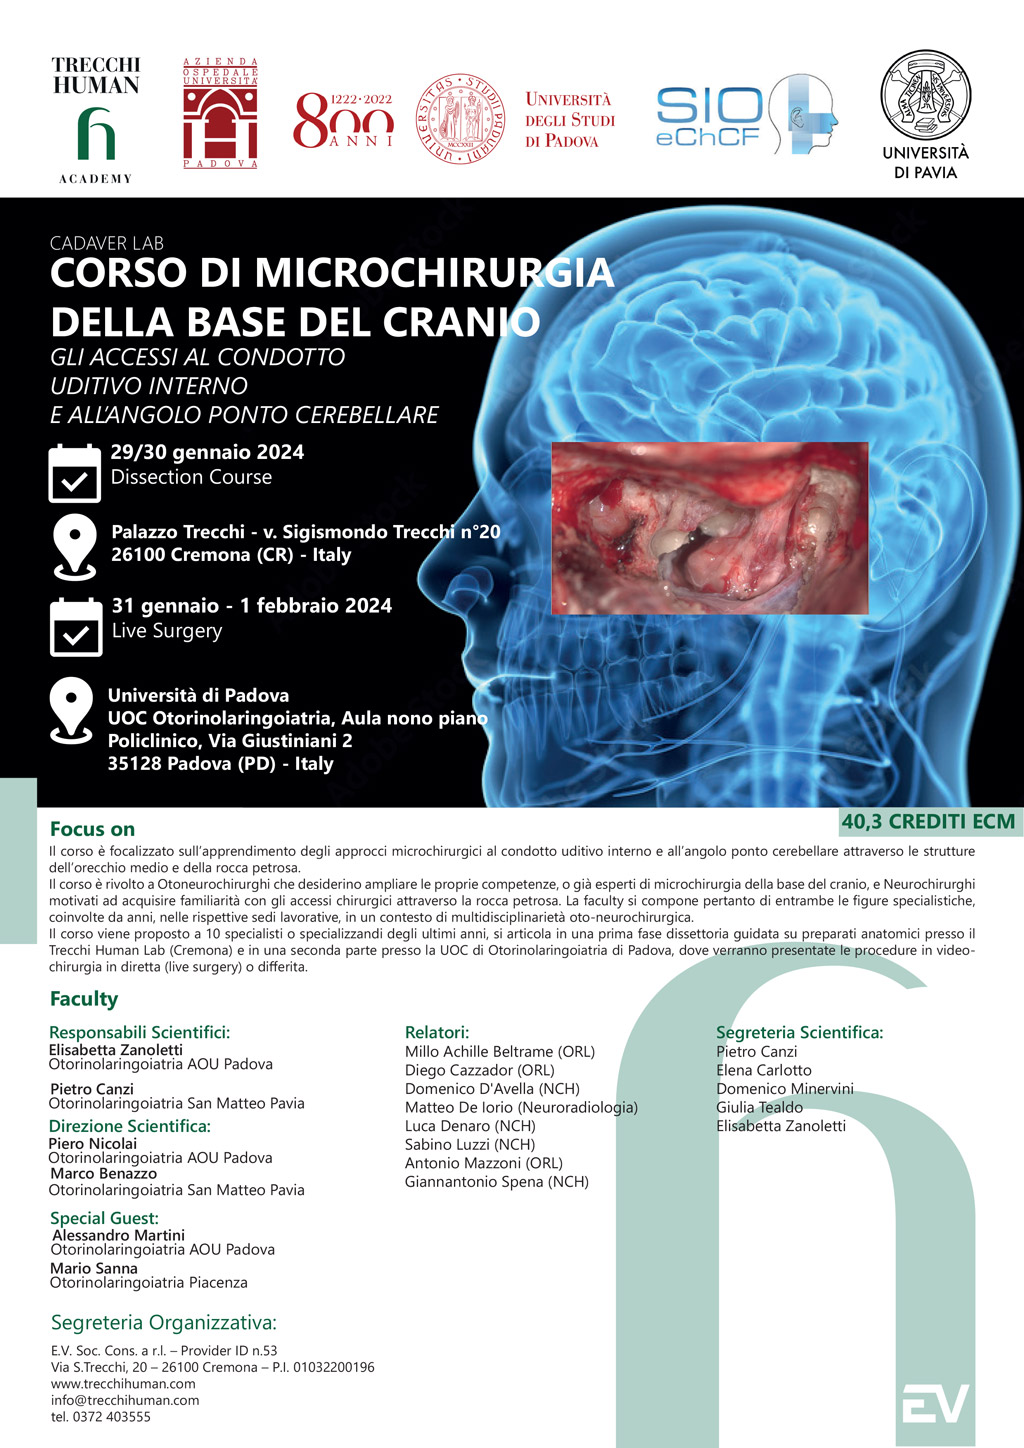 Corso-di-Microchirurgia-della-Base-del-Cranio---2a-edizione-1